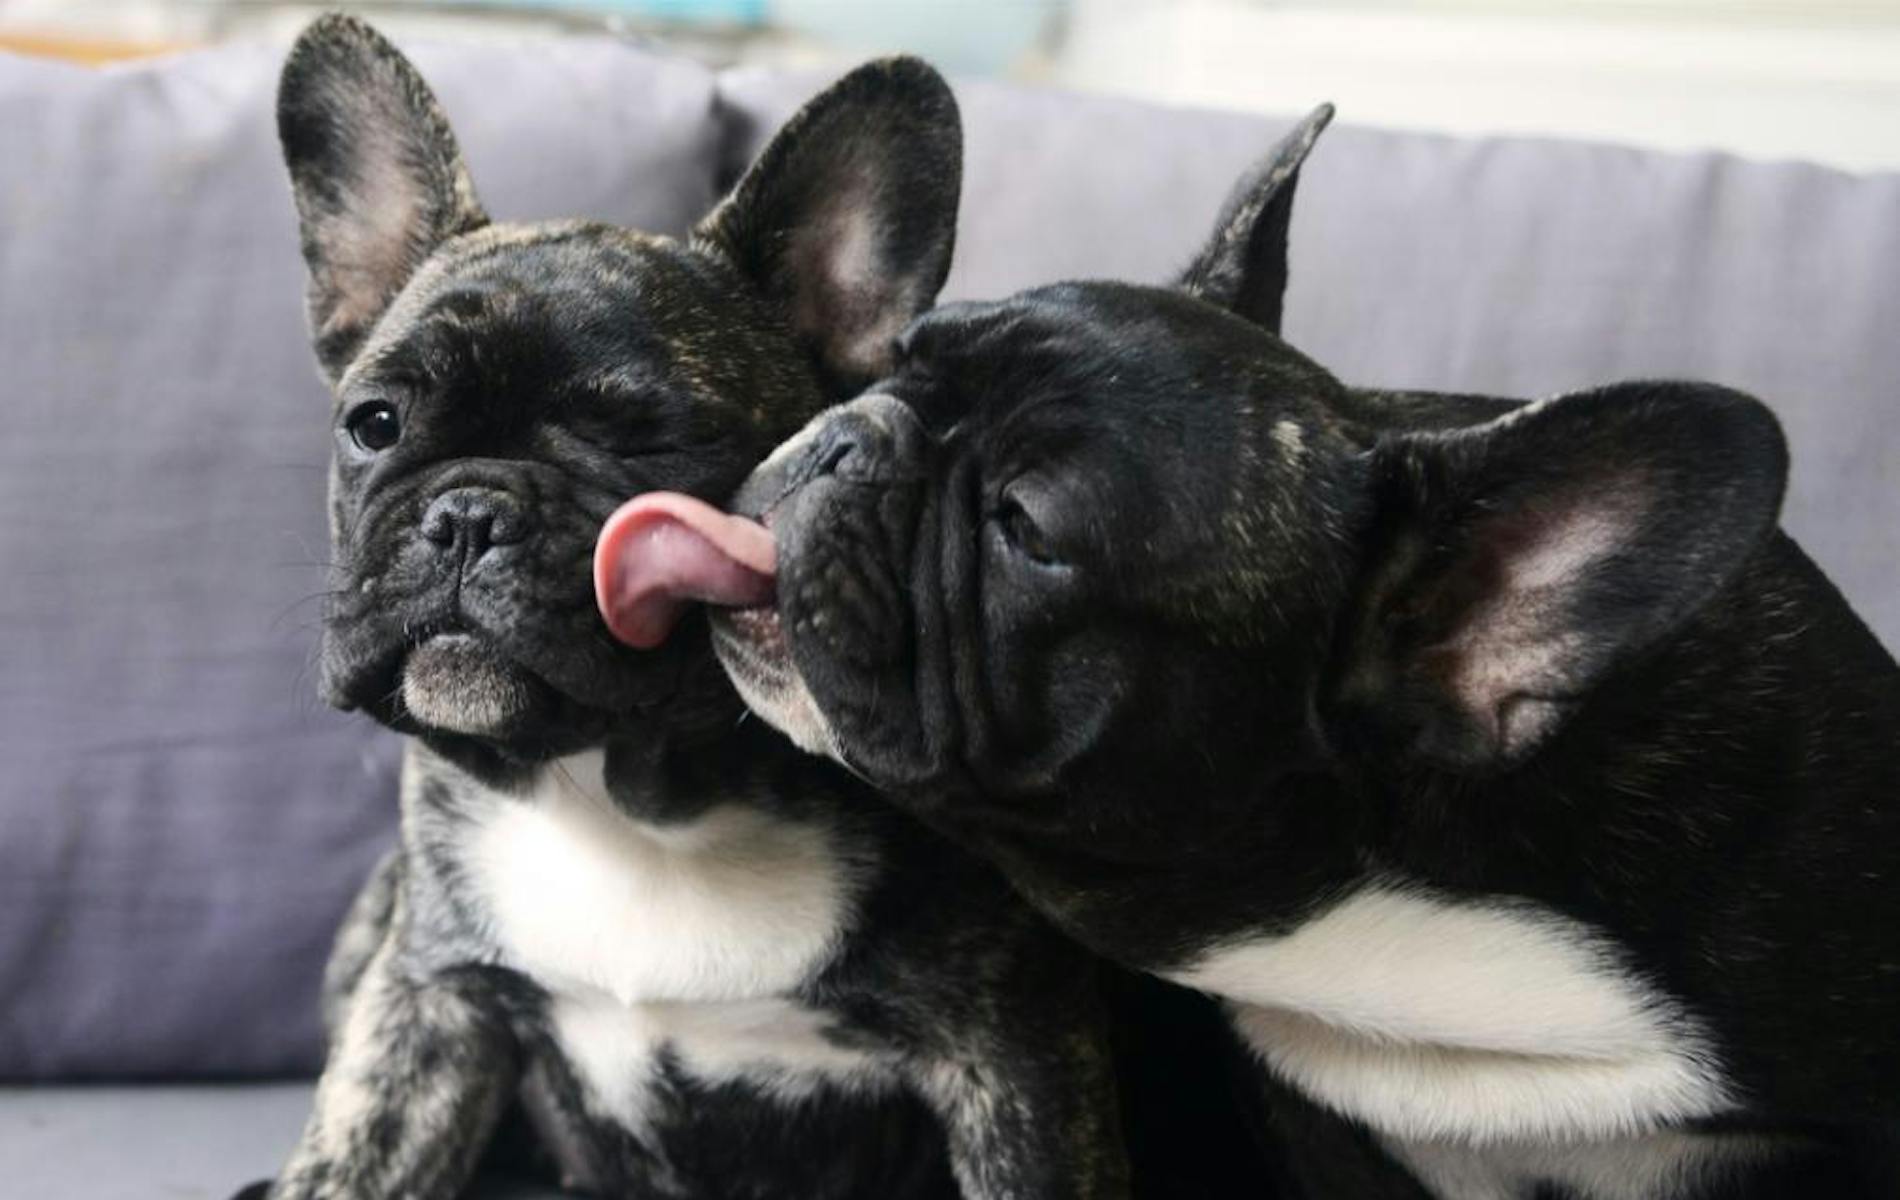 Dog licking other dog